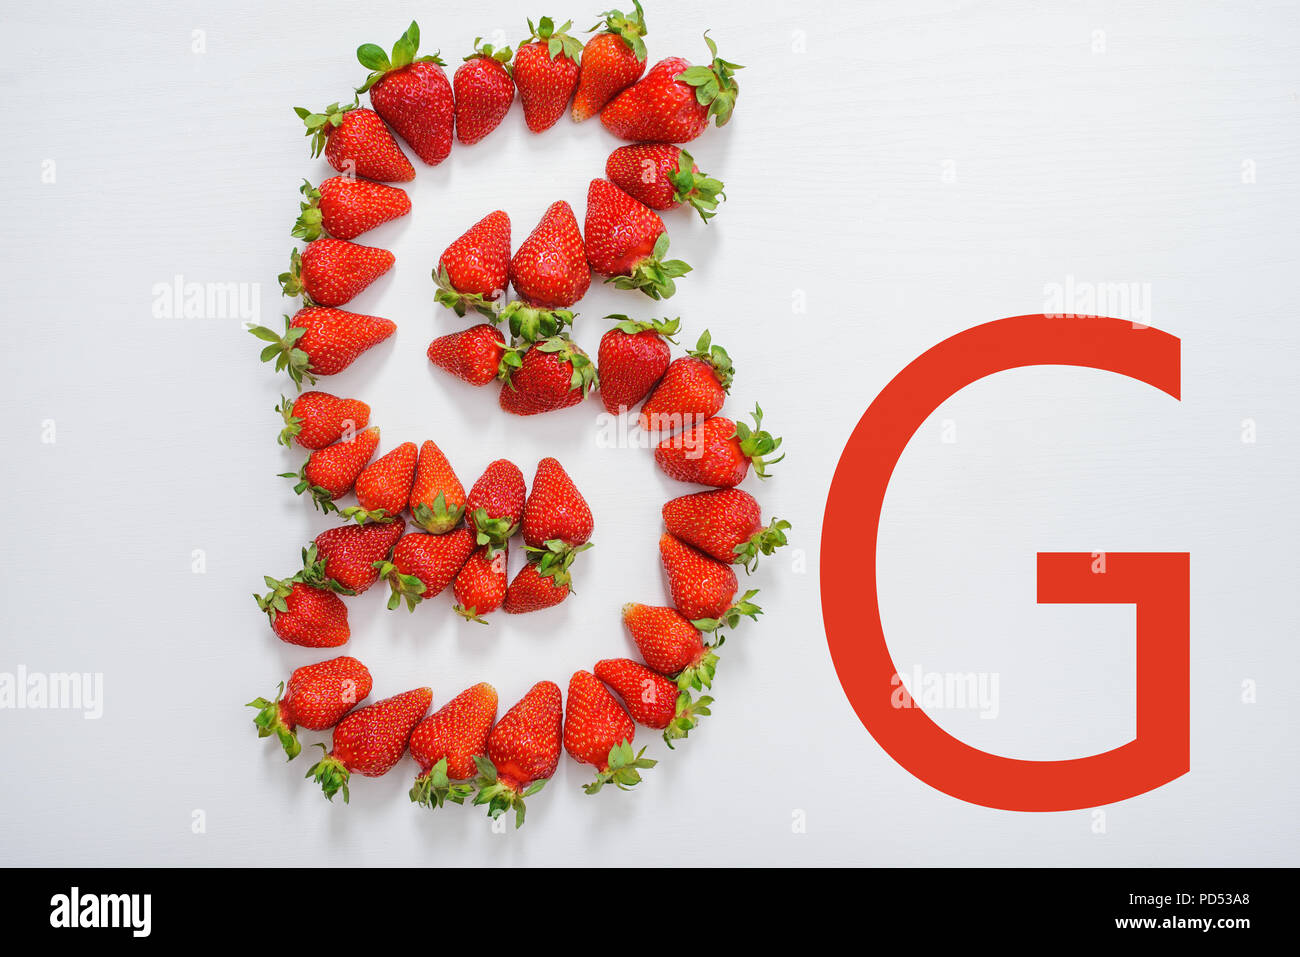 5g emblème composé de fraises fraîches. Banque D'Images